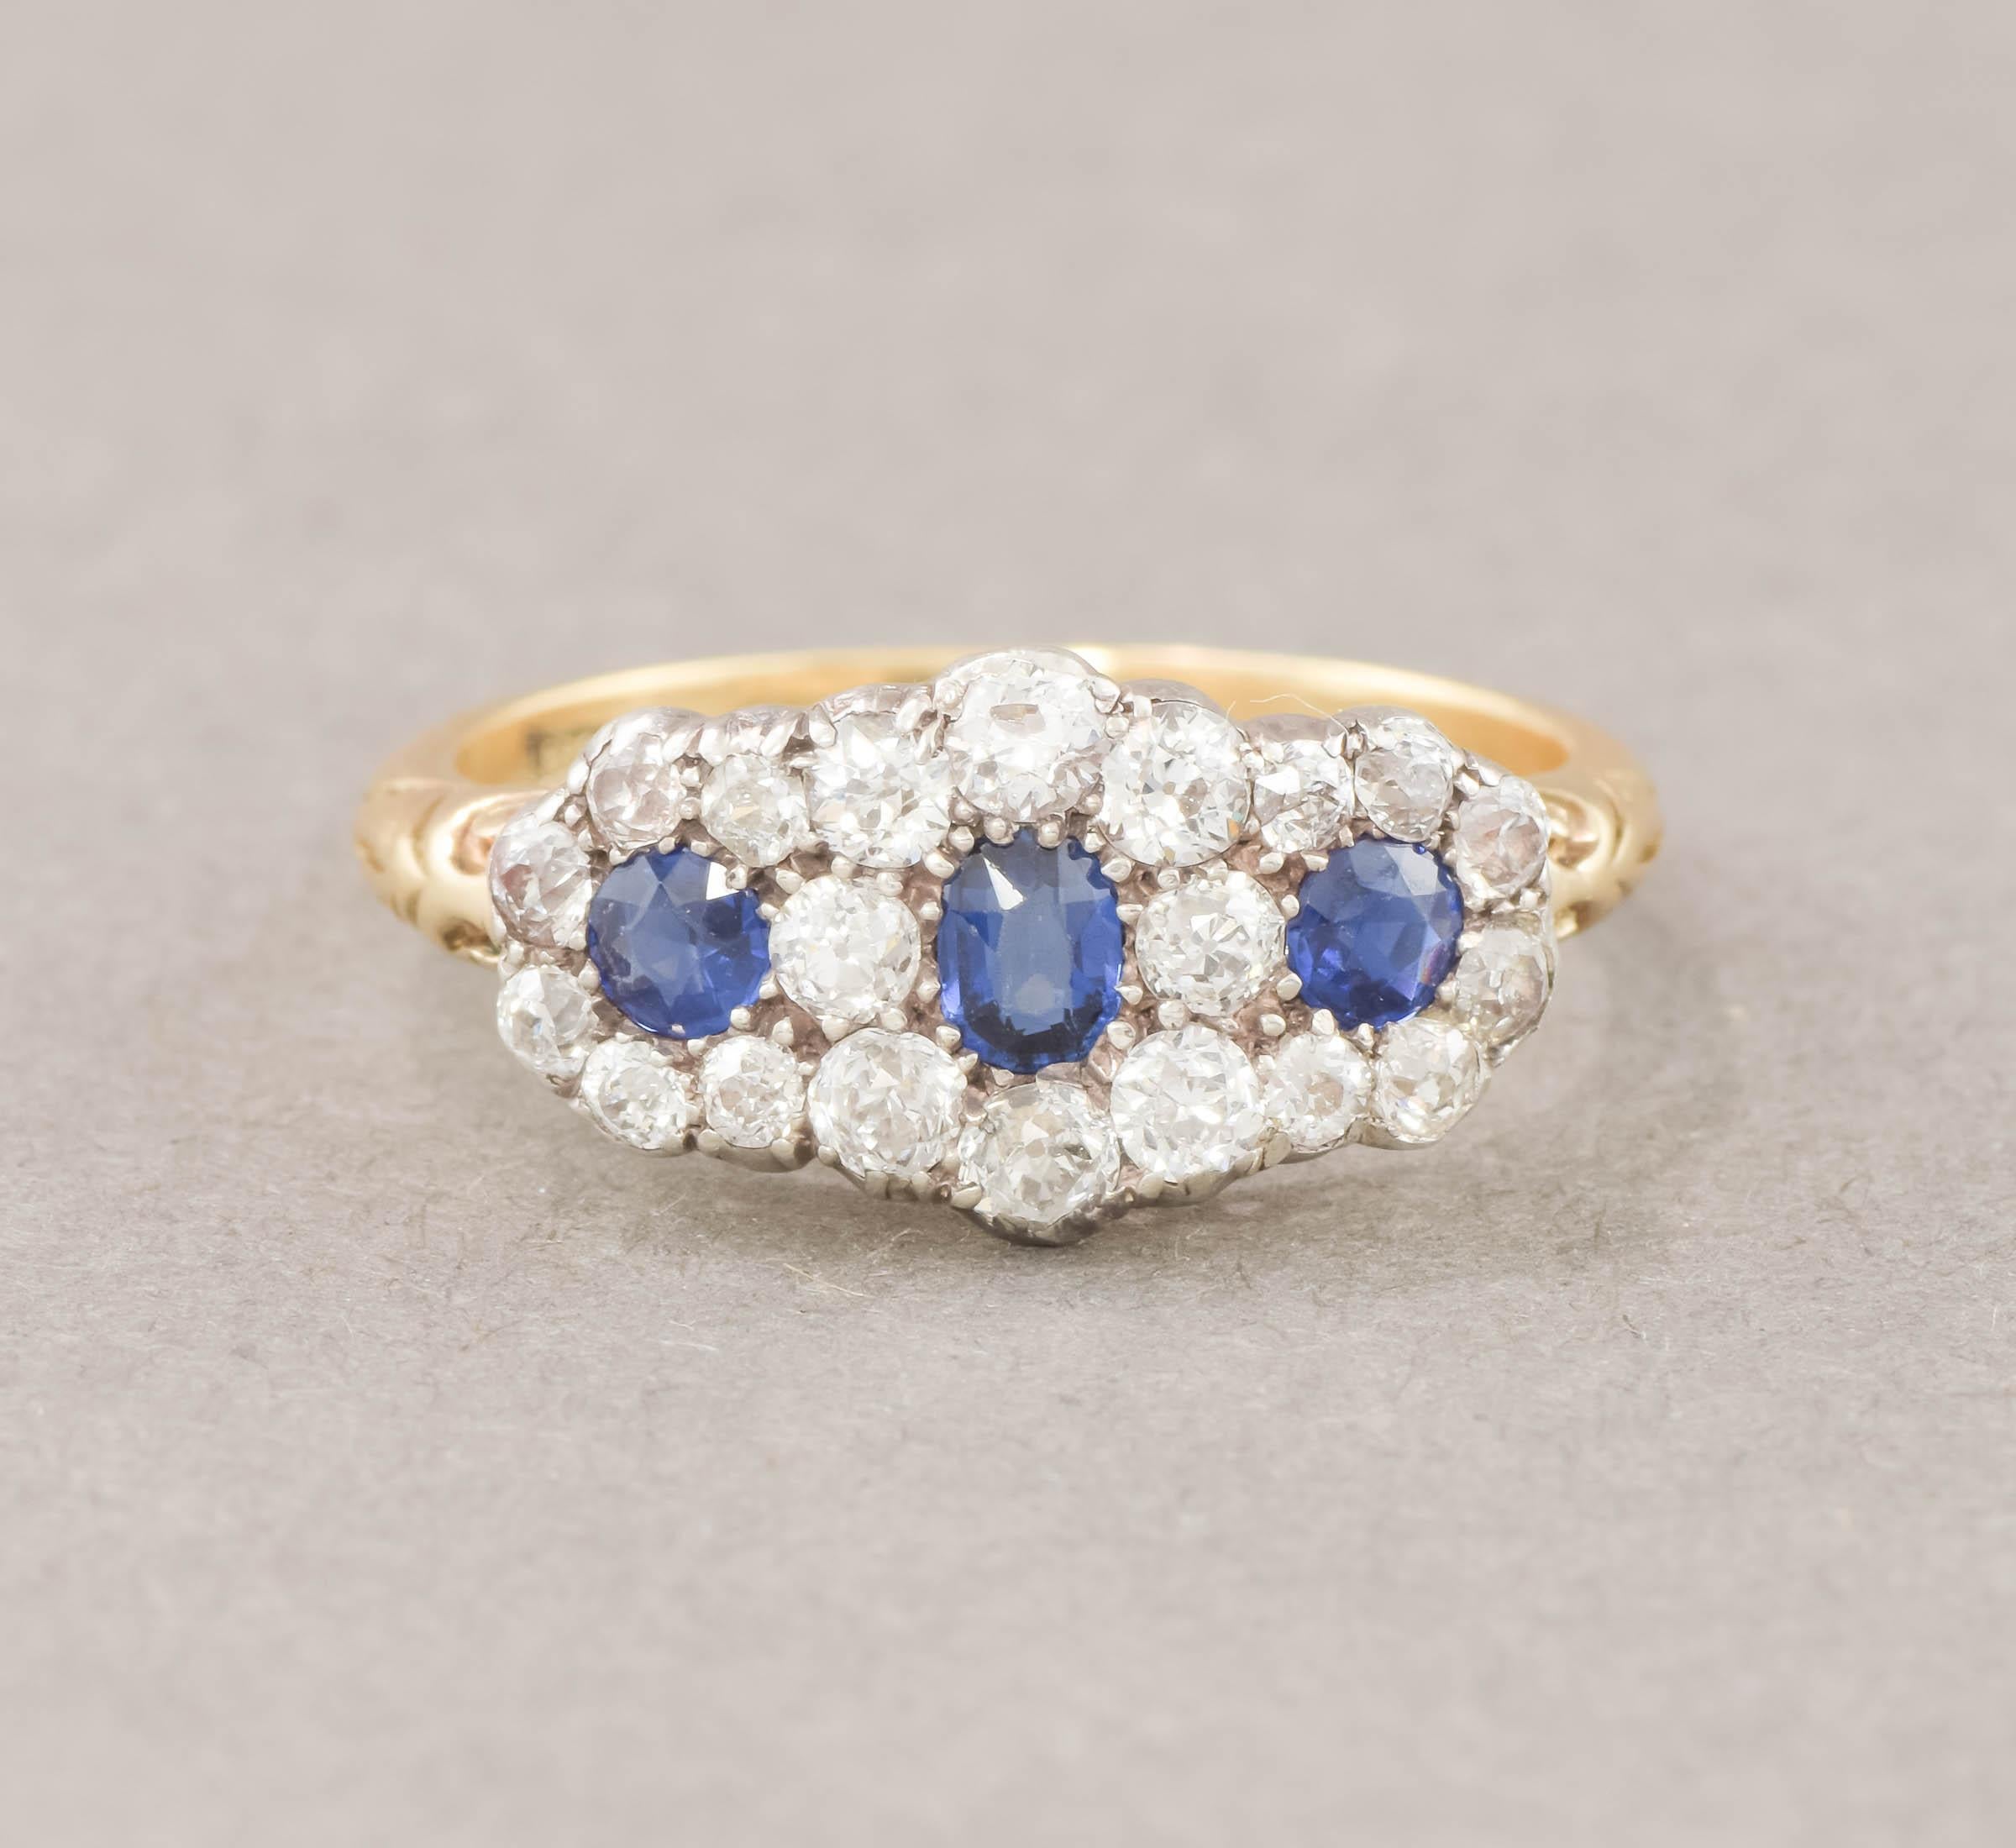 Angeboten wird eine elegante und extrem funkelnde späten viktorianischen Old European Cut Diamond und Blue Sapphire Ring.

Der Ring besteht aus ca. 1,20 Karat hellen und feurigen Diamanten im Altschliff und ca. 0,56 Karat blauen Saphiren im